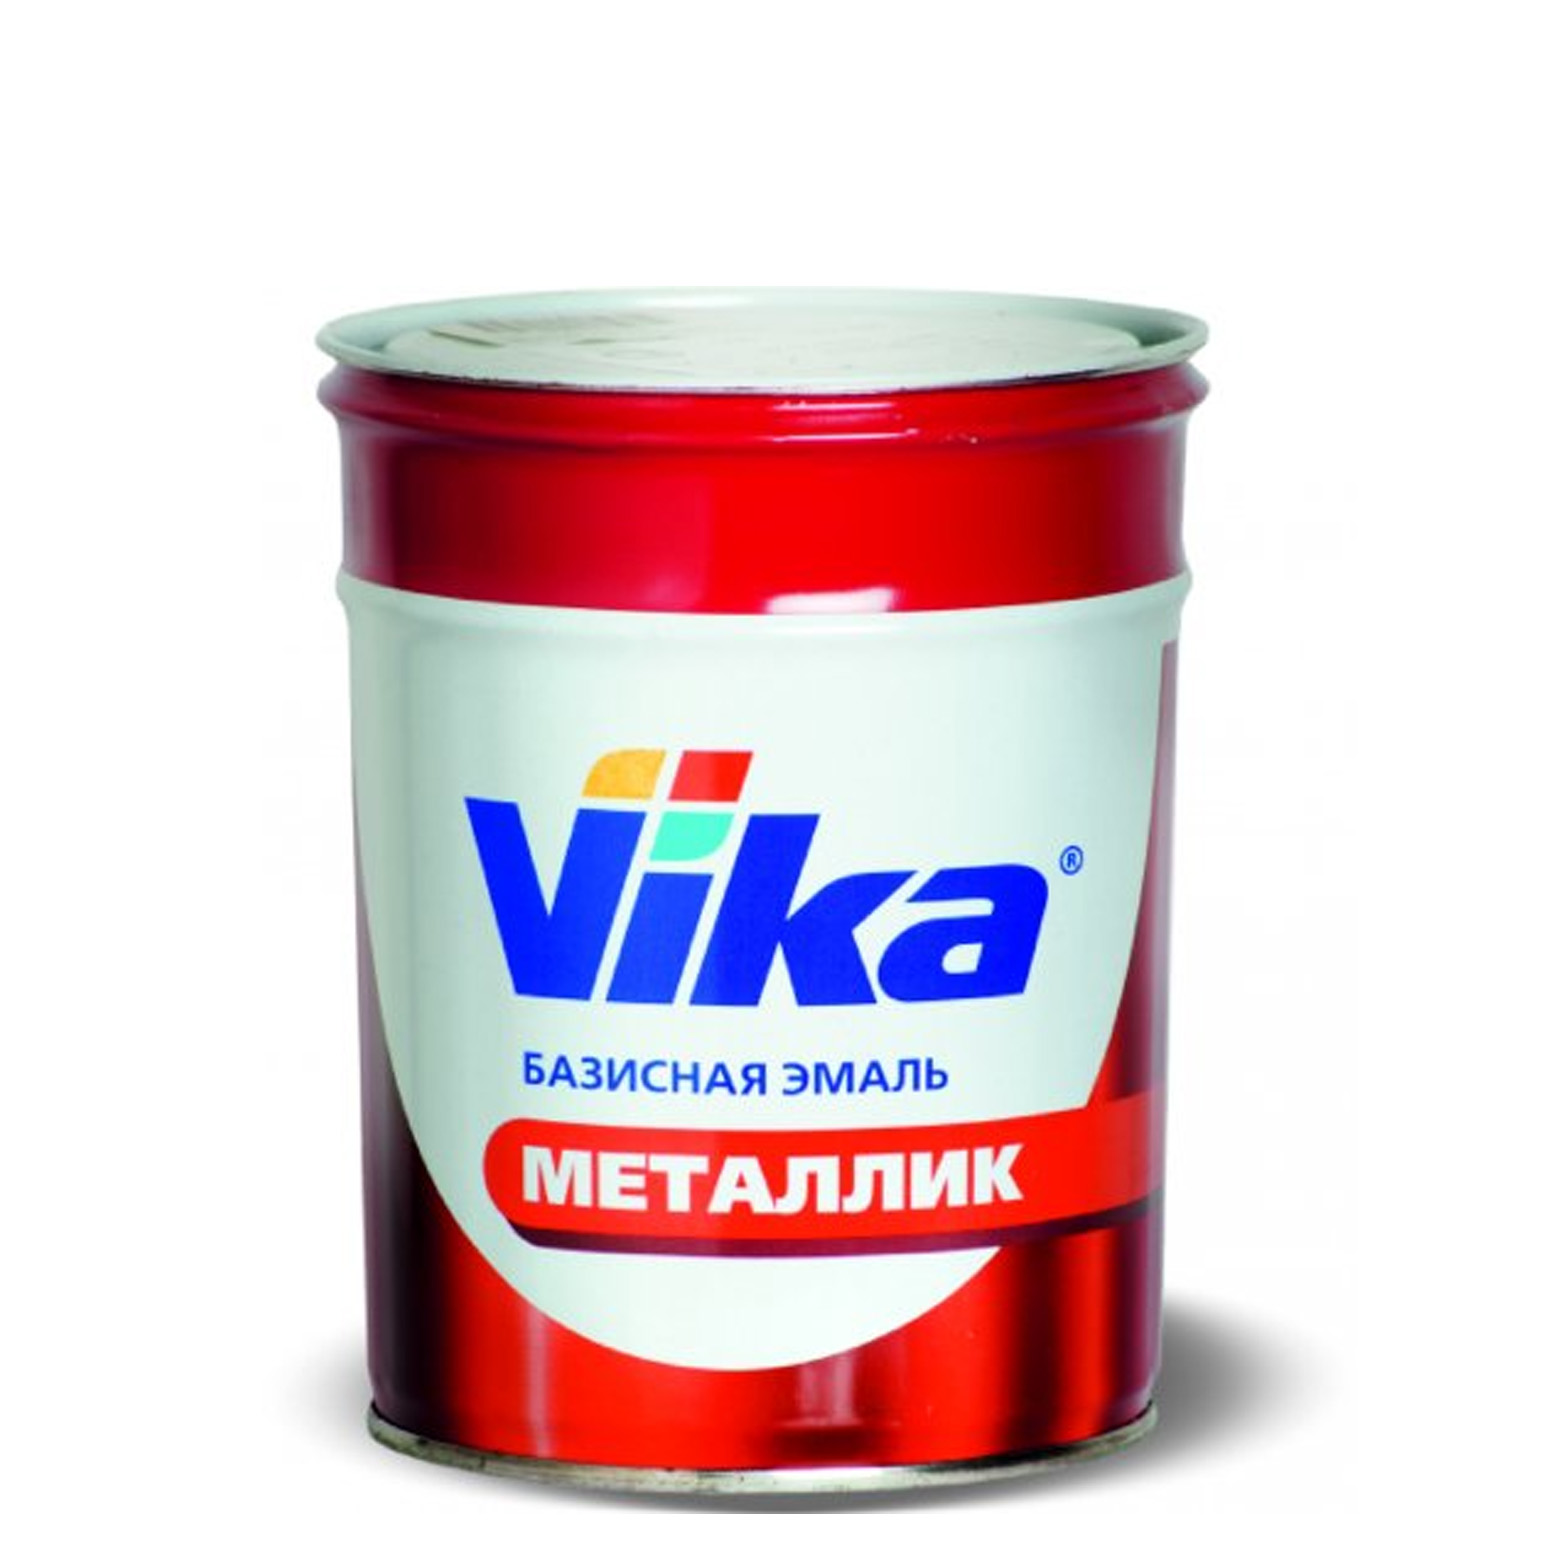 Фото 1 - Автоэмаль Металлик, цвет 902 Посейдон, профессиональная базовая, - 0,9 кг Vika/Вика.